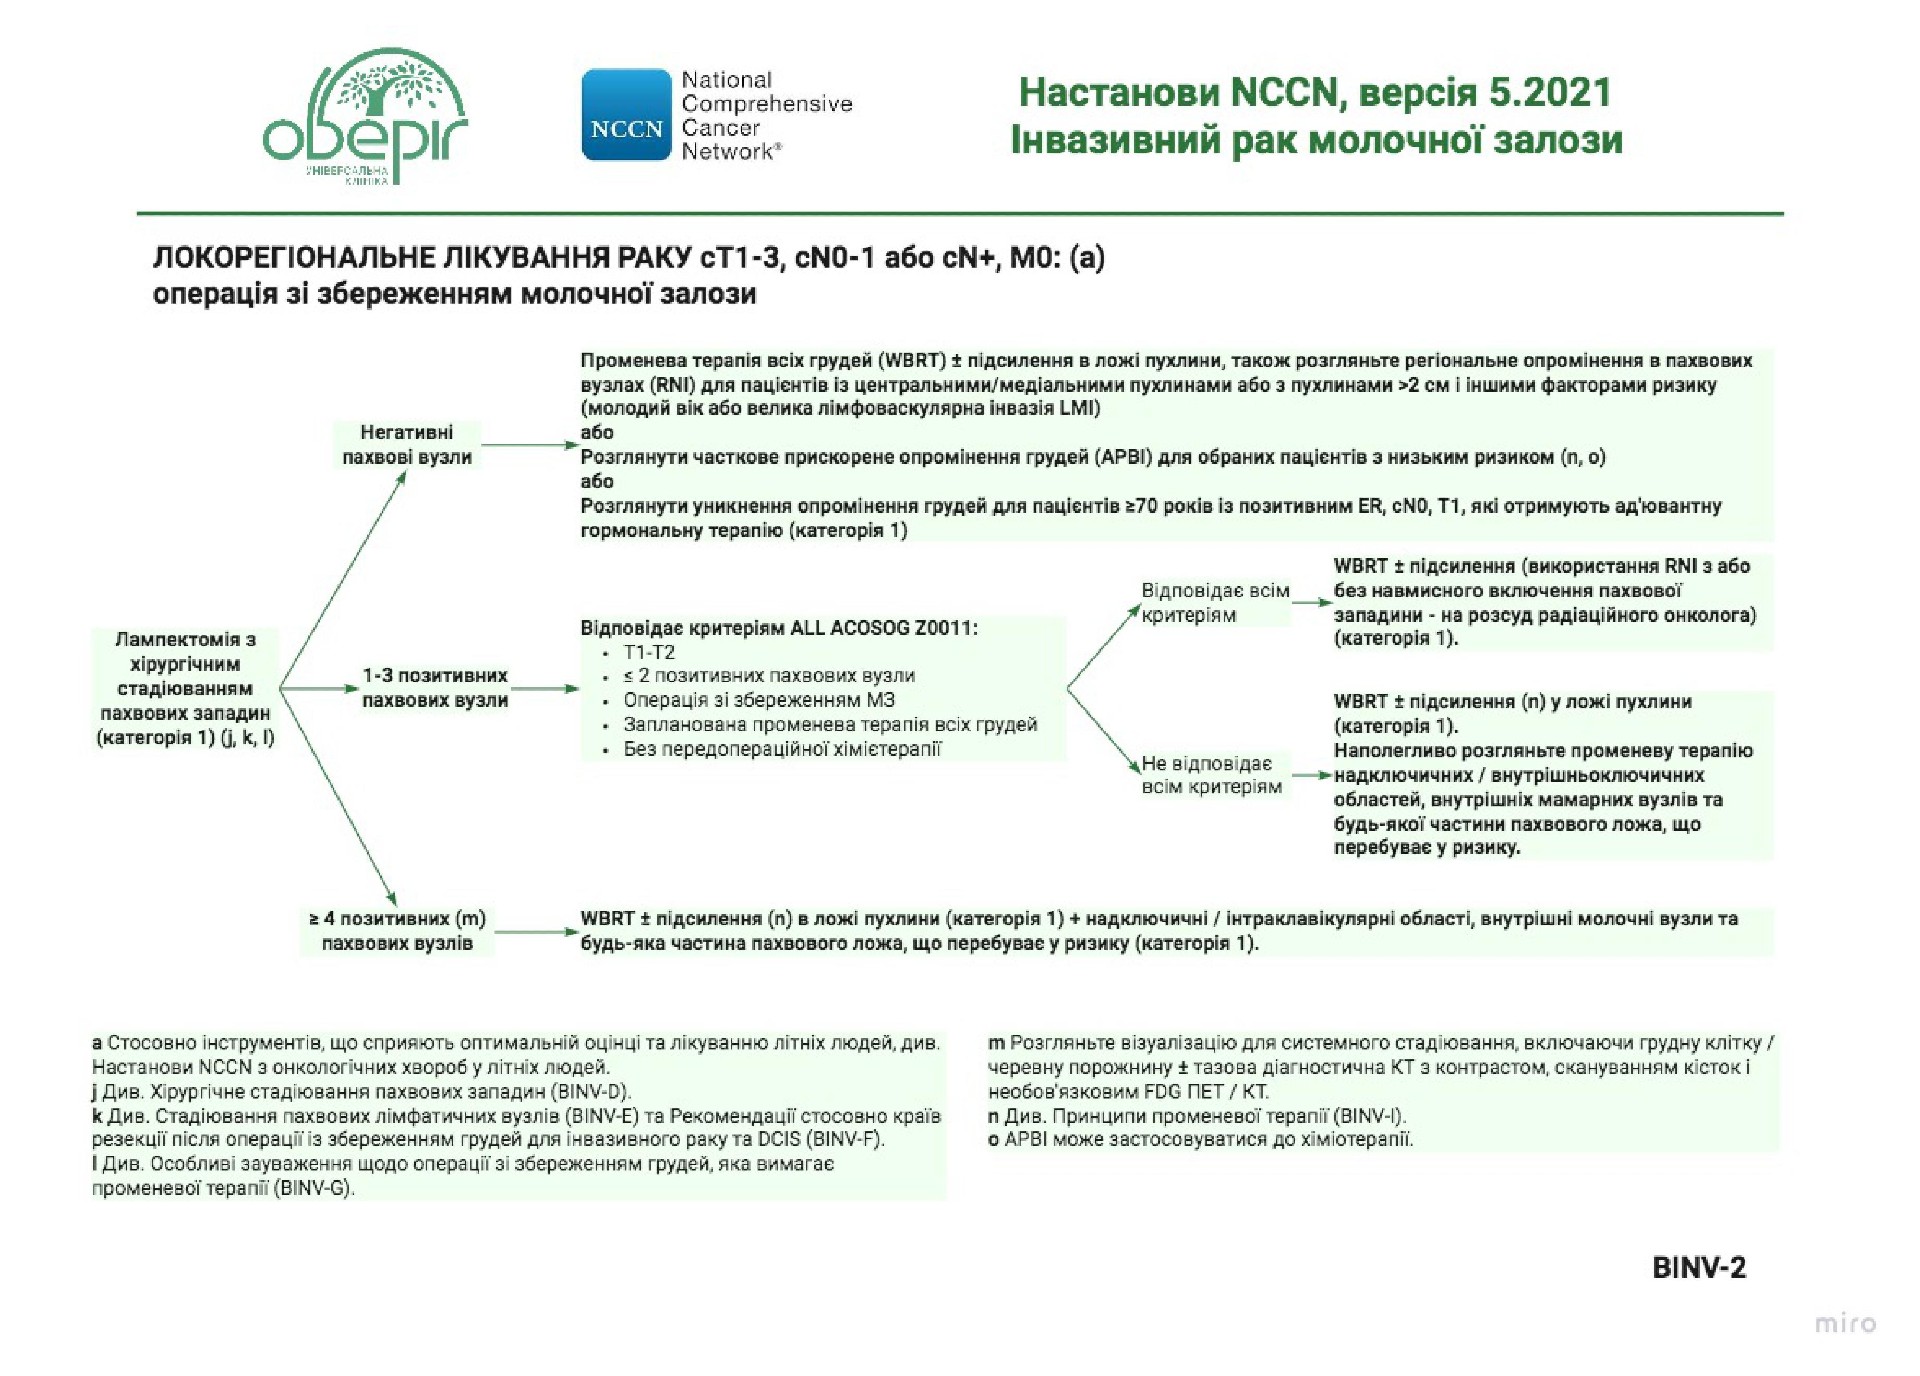 Рекомендации NCCN относительно лечения рака молочной железы